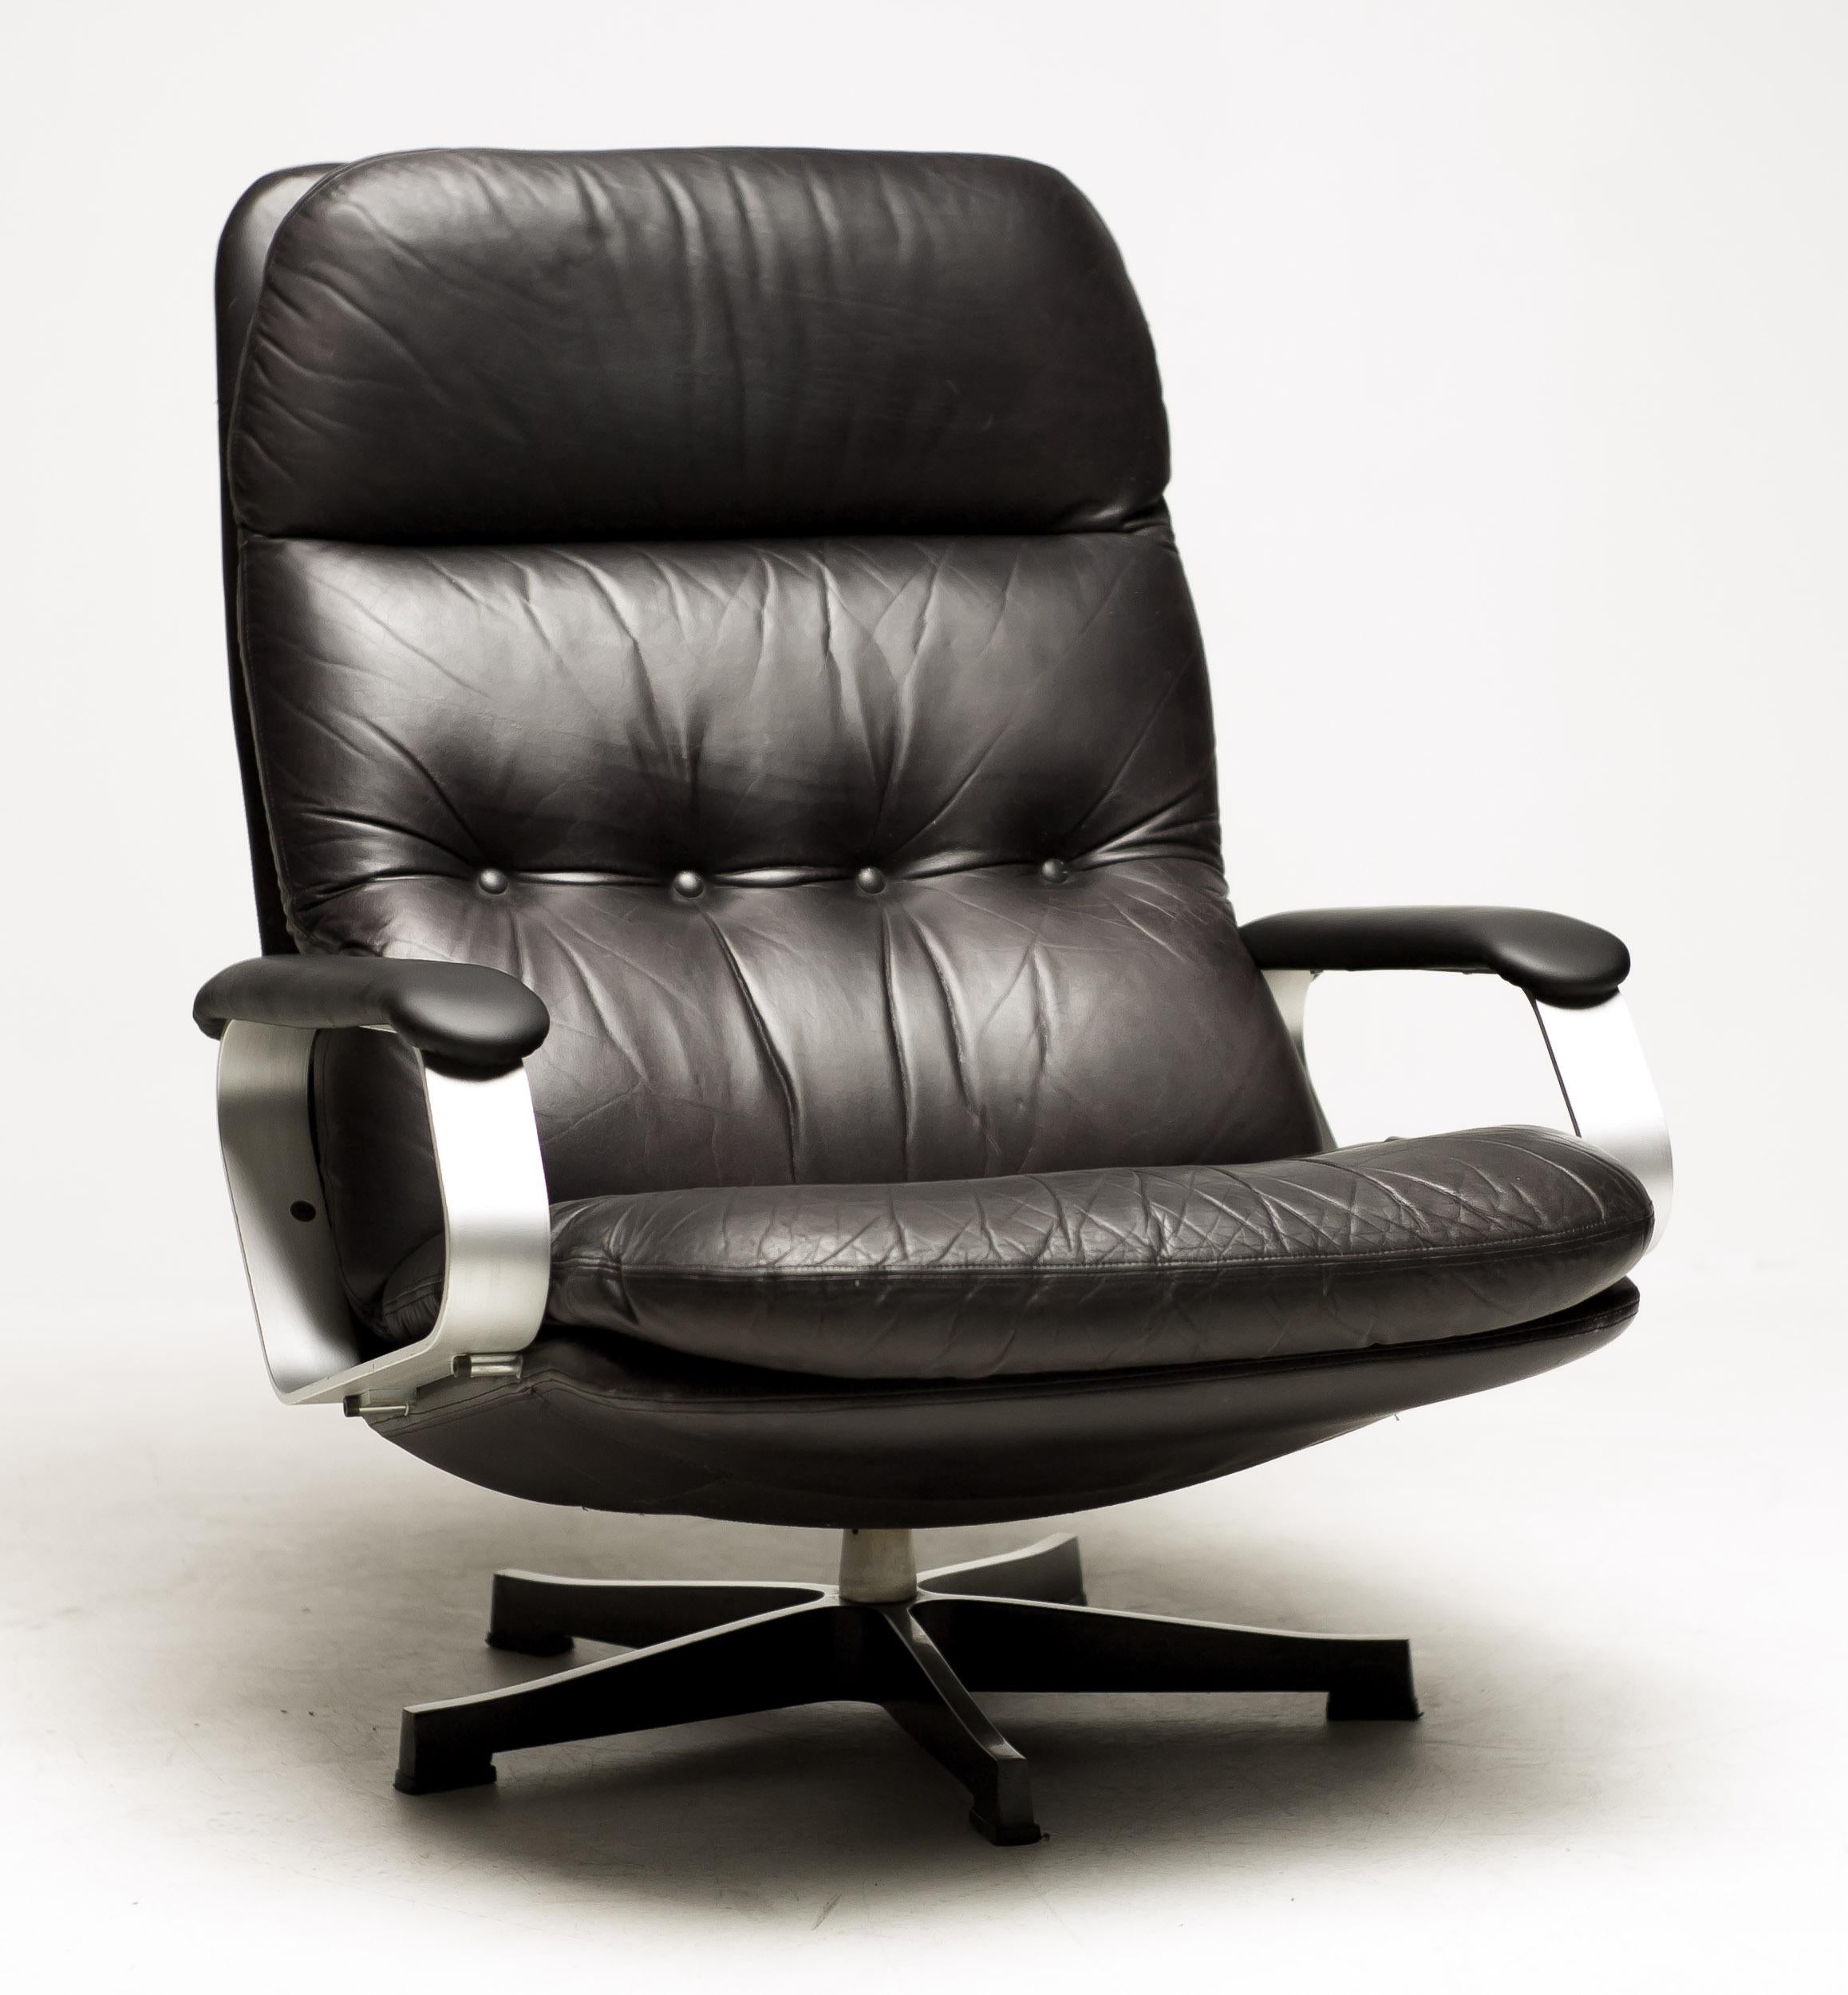 Sehr eindrucksvoller und bequemer 1960er Sessel aus schwarzem Leder.
Drehfuß aus Aluminium und Armlehnen aus Aluminium, gepolstert mit schwarzem Leder.
Der Eames Lounge Chair hat den Ruf, bequem zu sein, aber dieser Stuhl ist wirklich erstaunlich